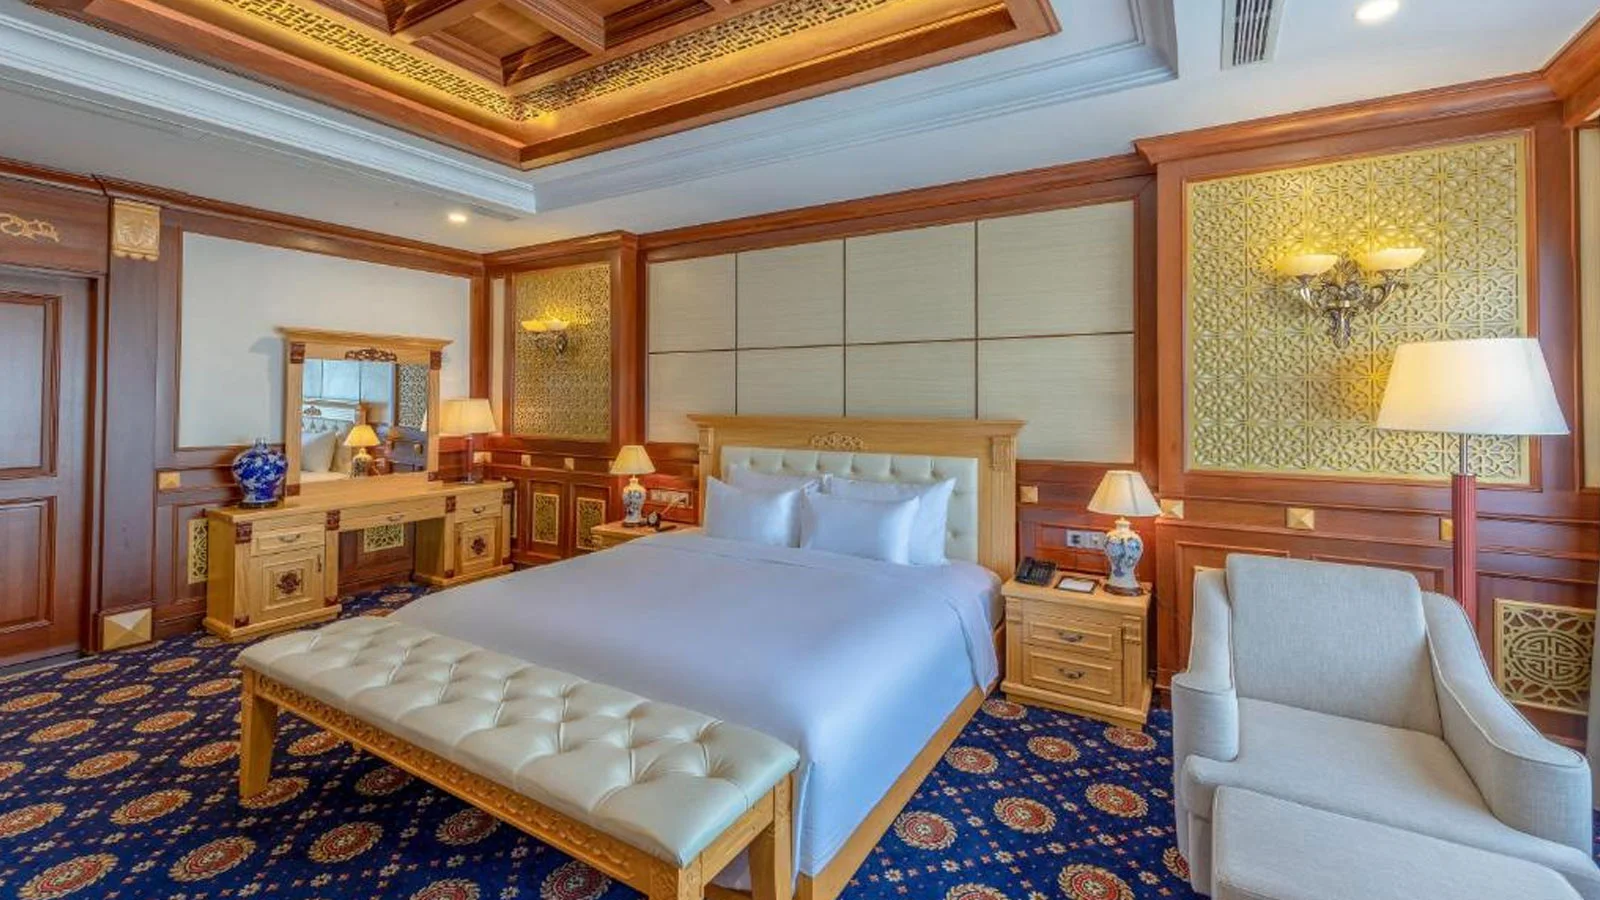 Khách sạn DLG Hotel Đà Nẵng